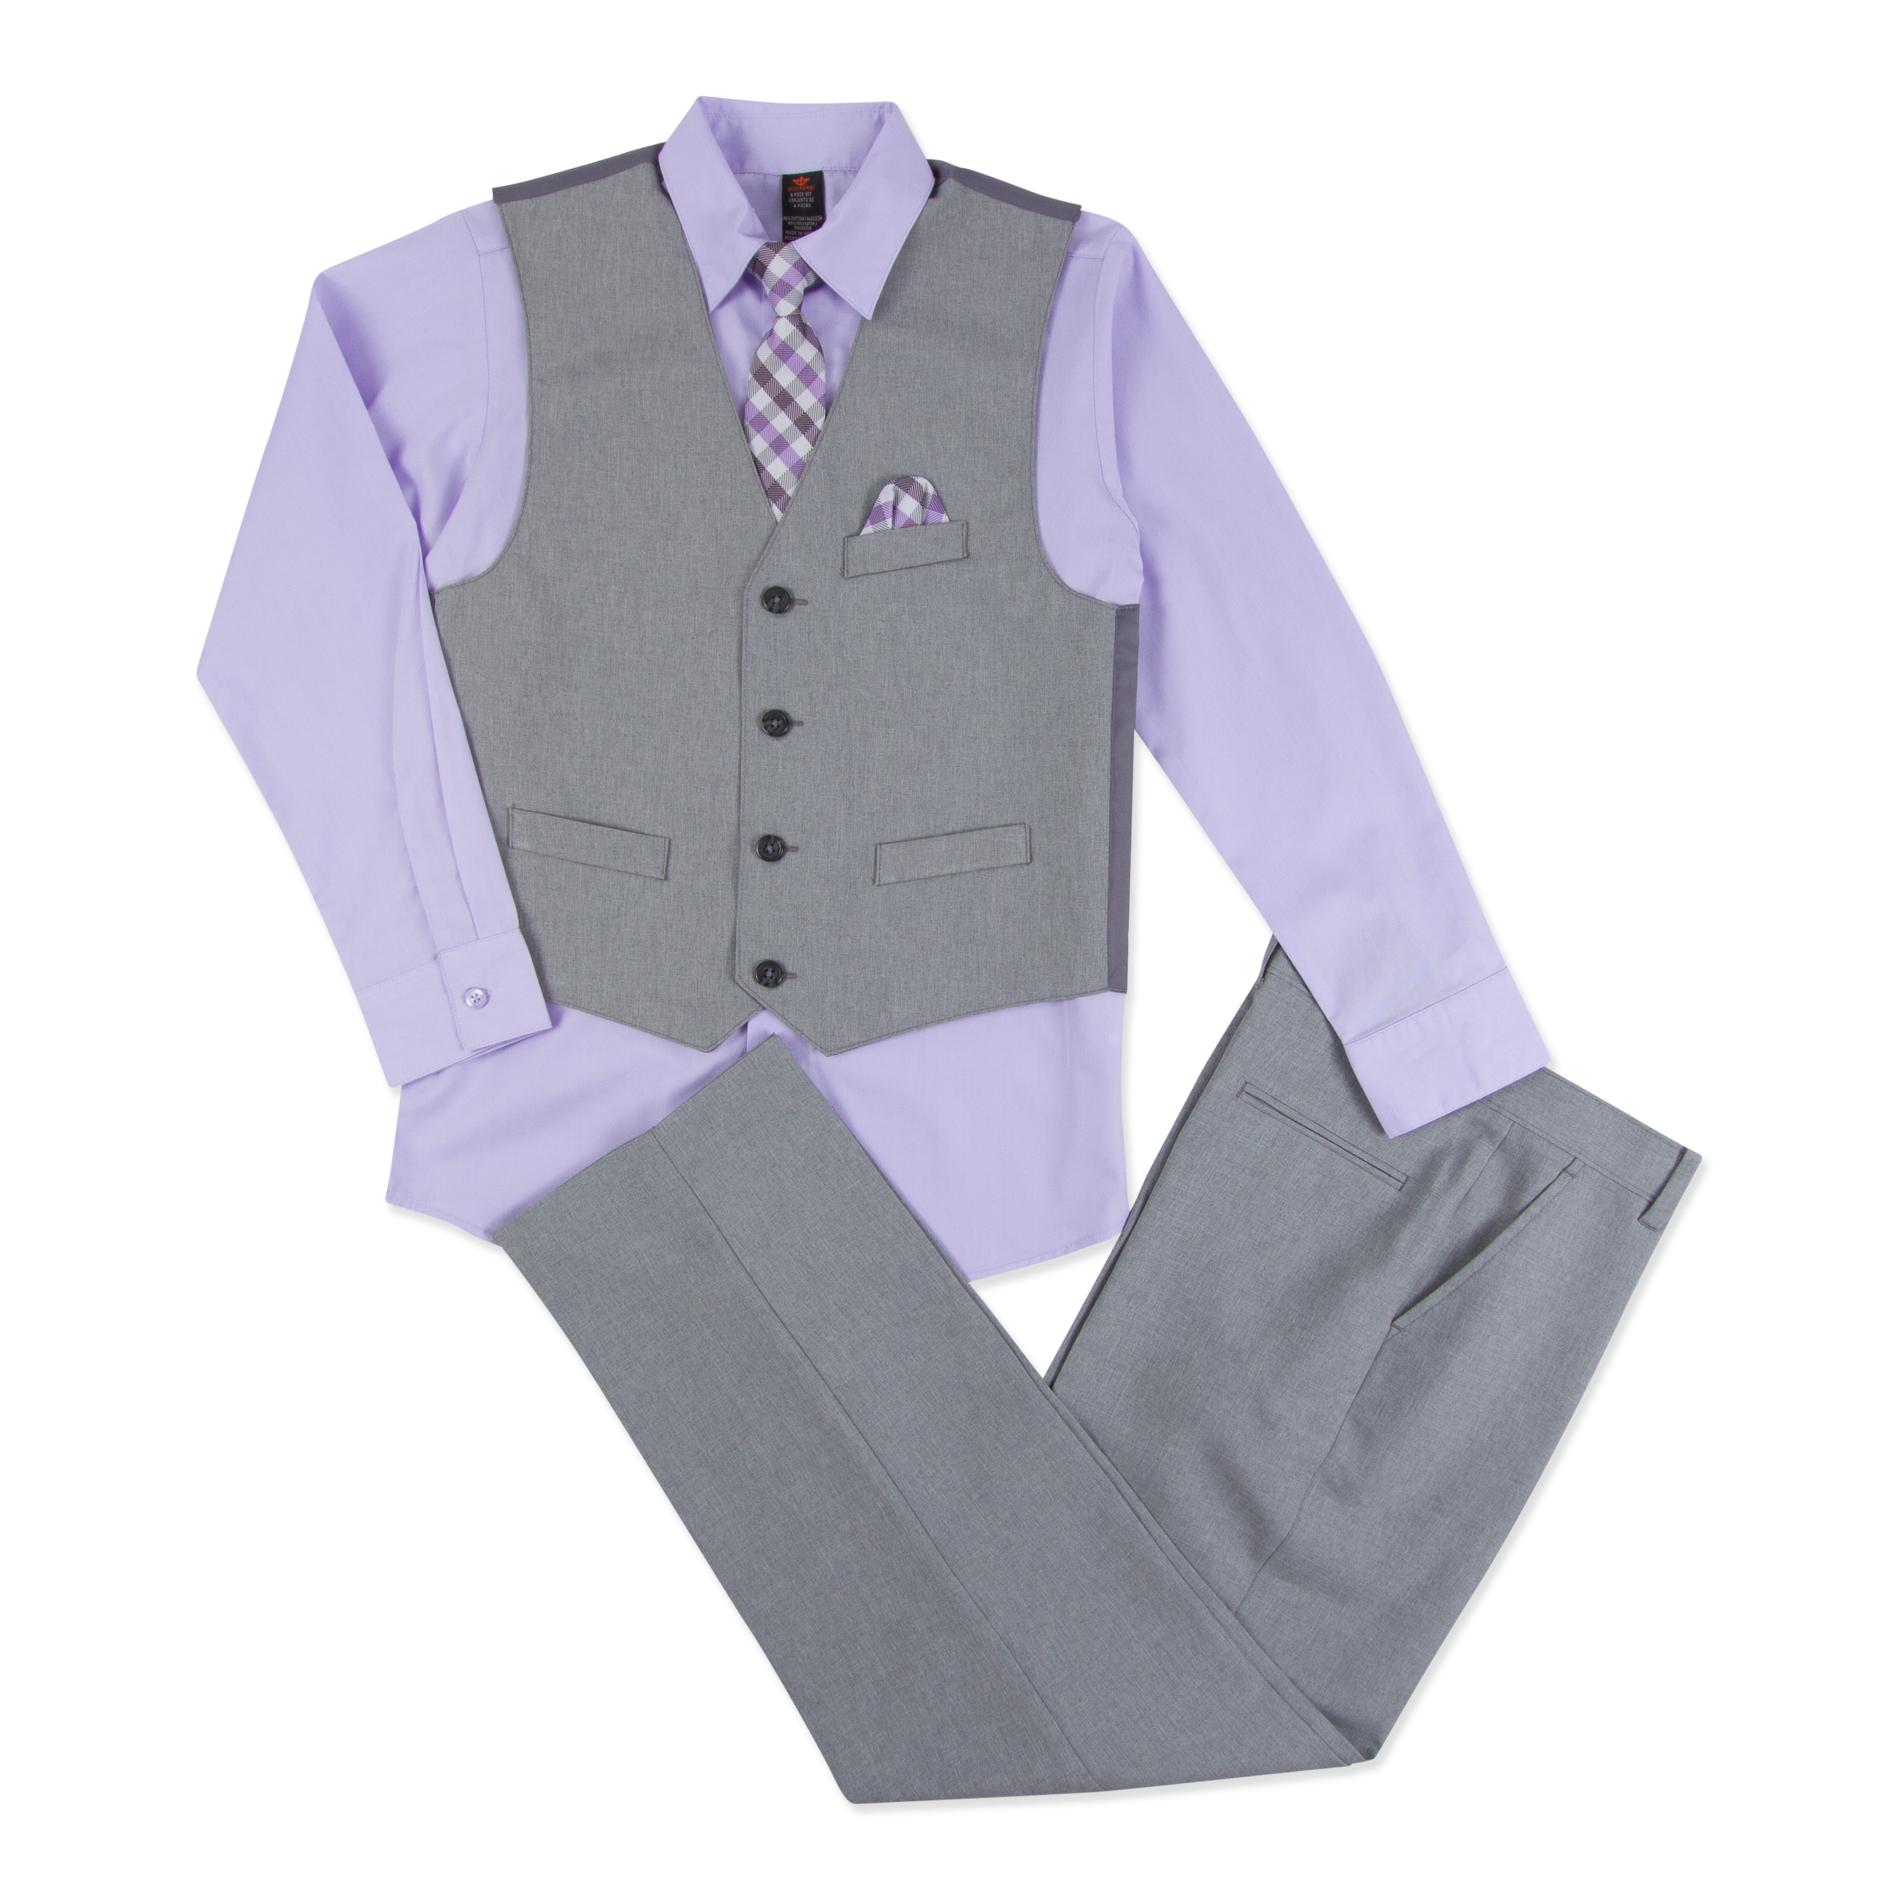 Dockers Newborn, Infant & Toddler Boy's 5-Piece Suit